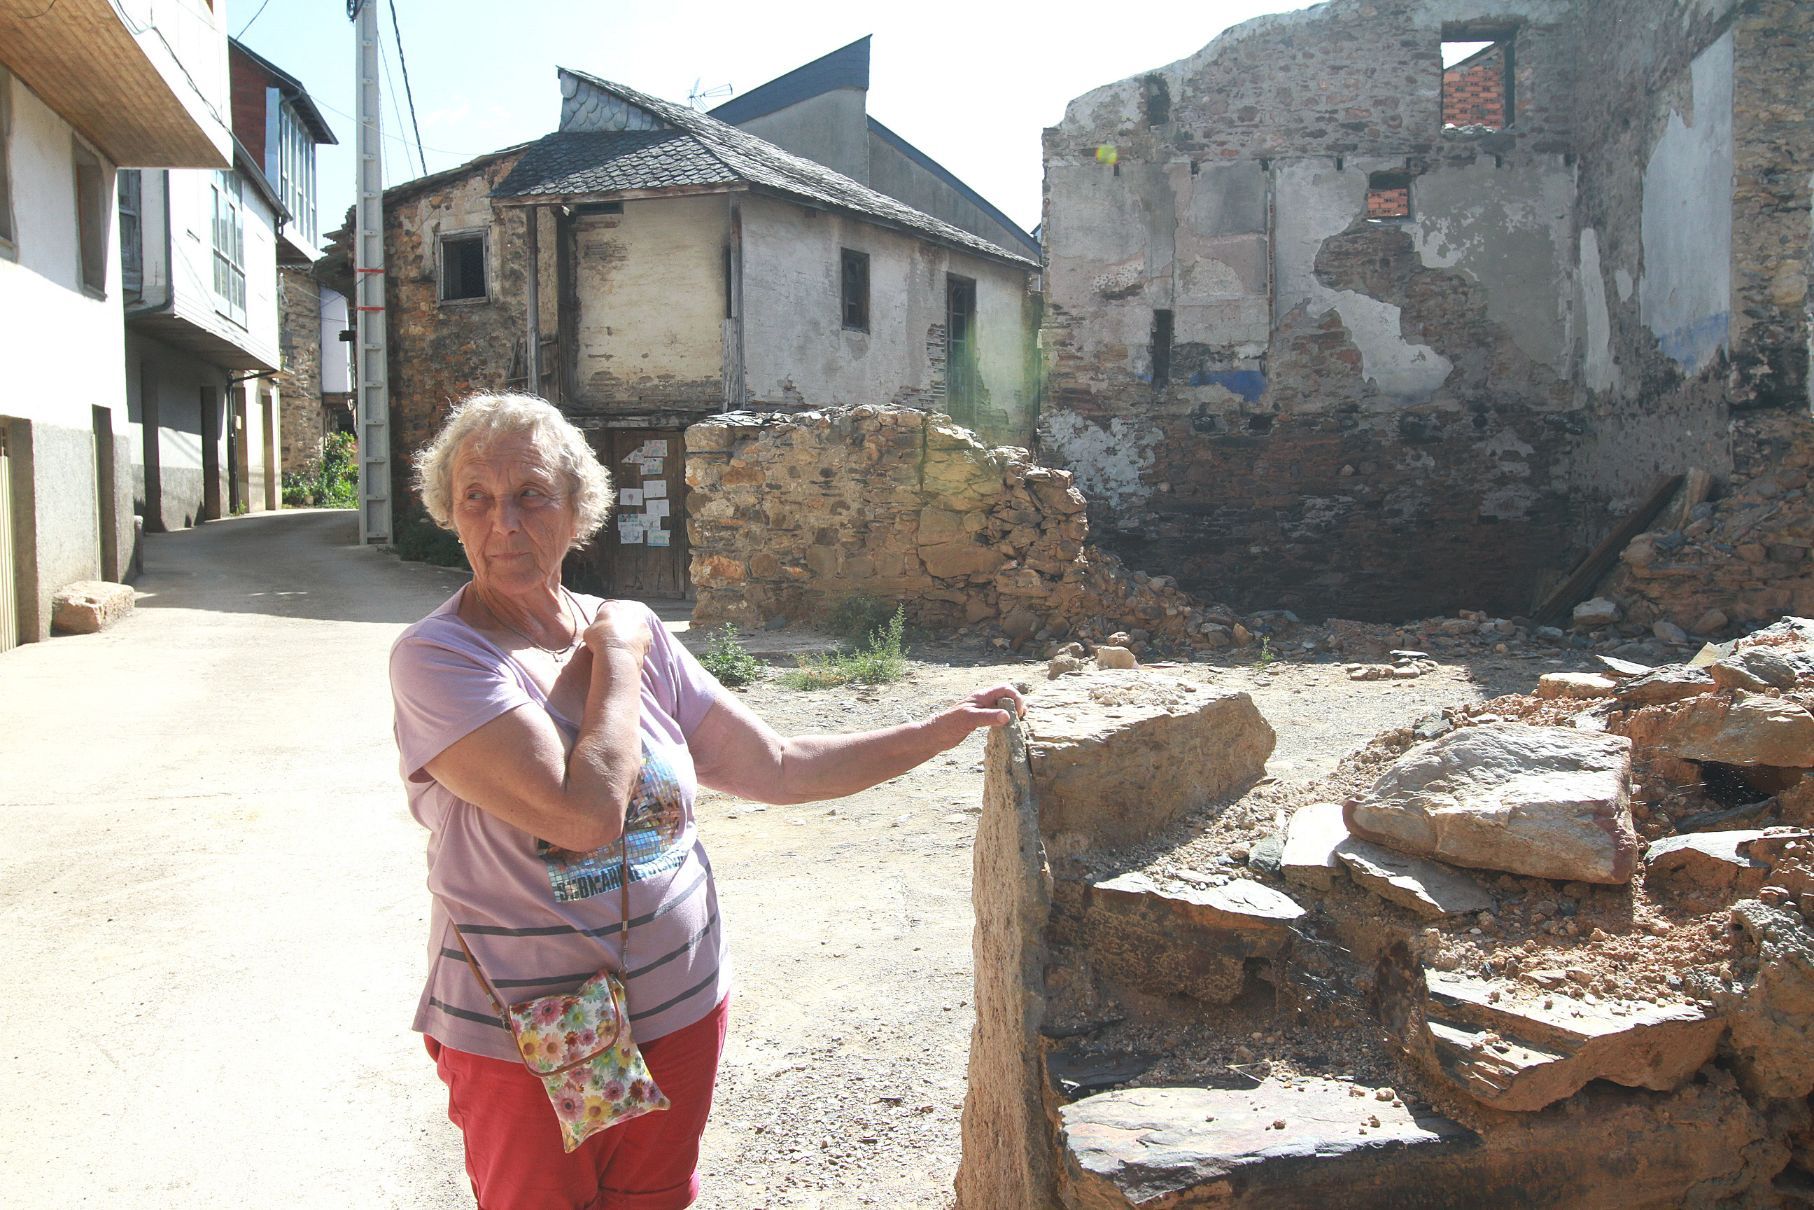 Marina camina por una zona devastada enseñando las ruinas de lo que era casas hasta hace un año